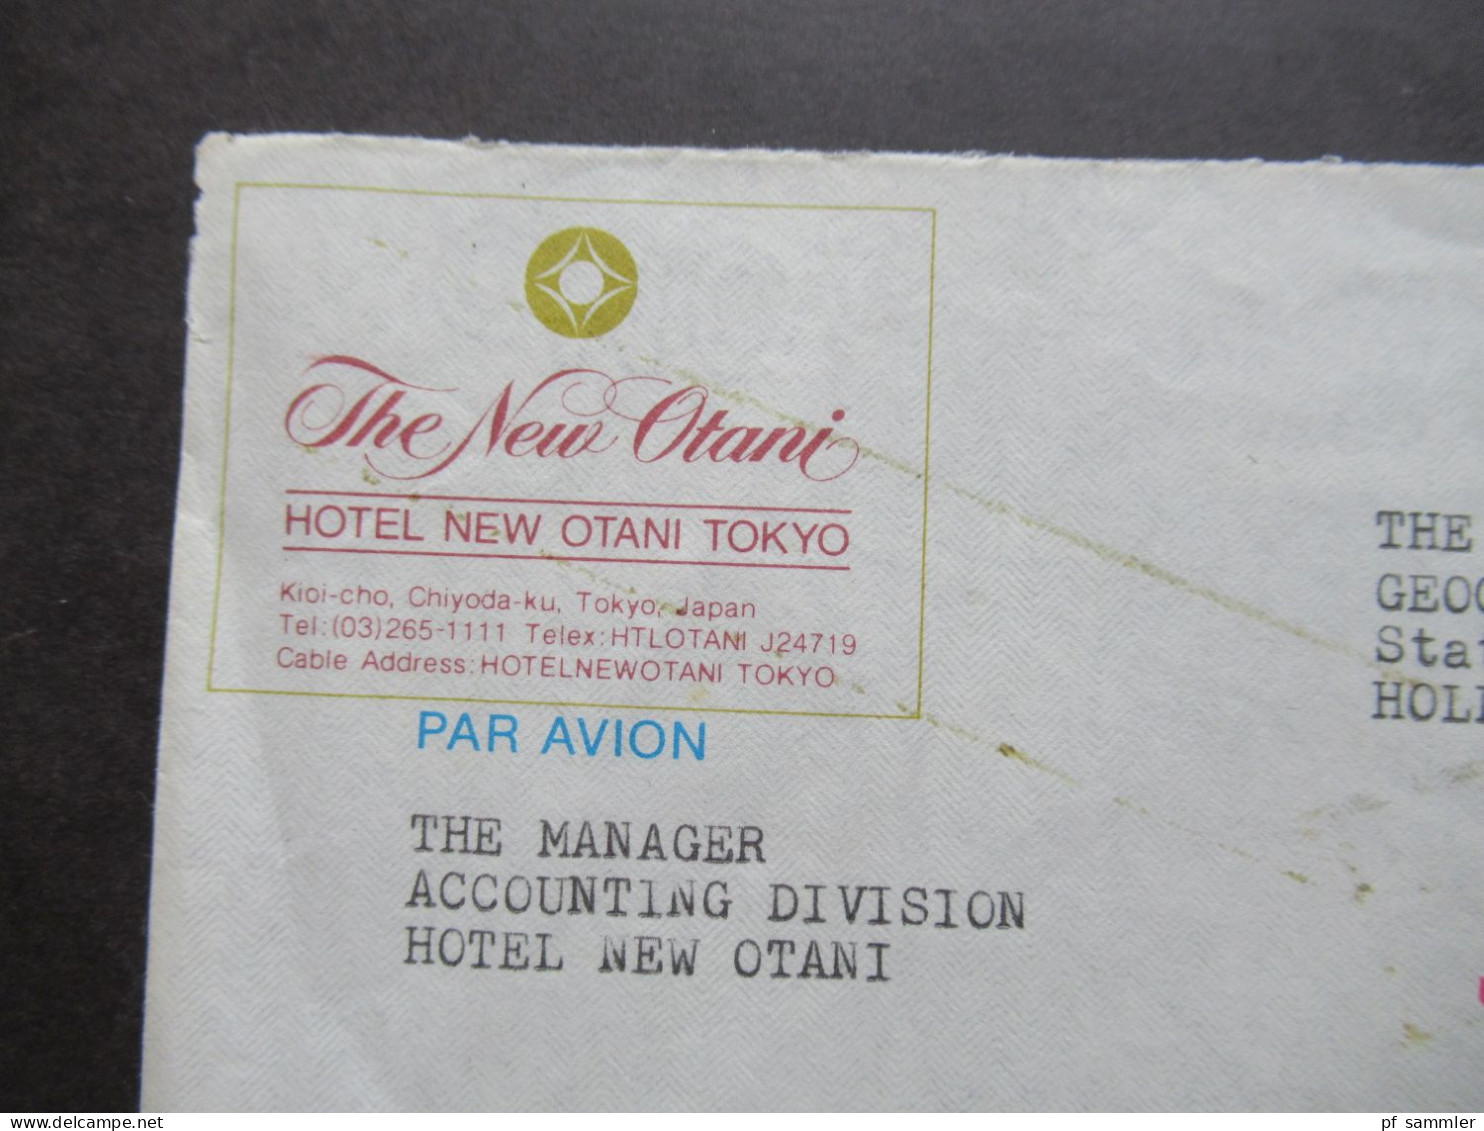 Japan Air Mail 1978 / 79 dekorative Umschläge und Freistempel The New Otani / Hotel New Otani Tokyo nach Bussum Holland